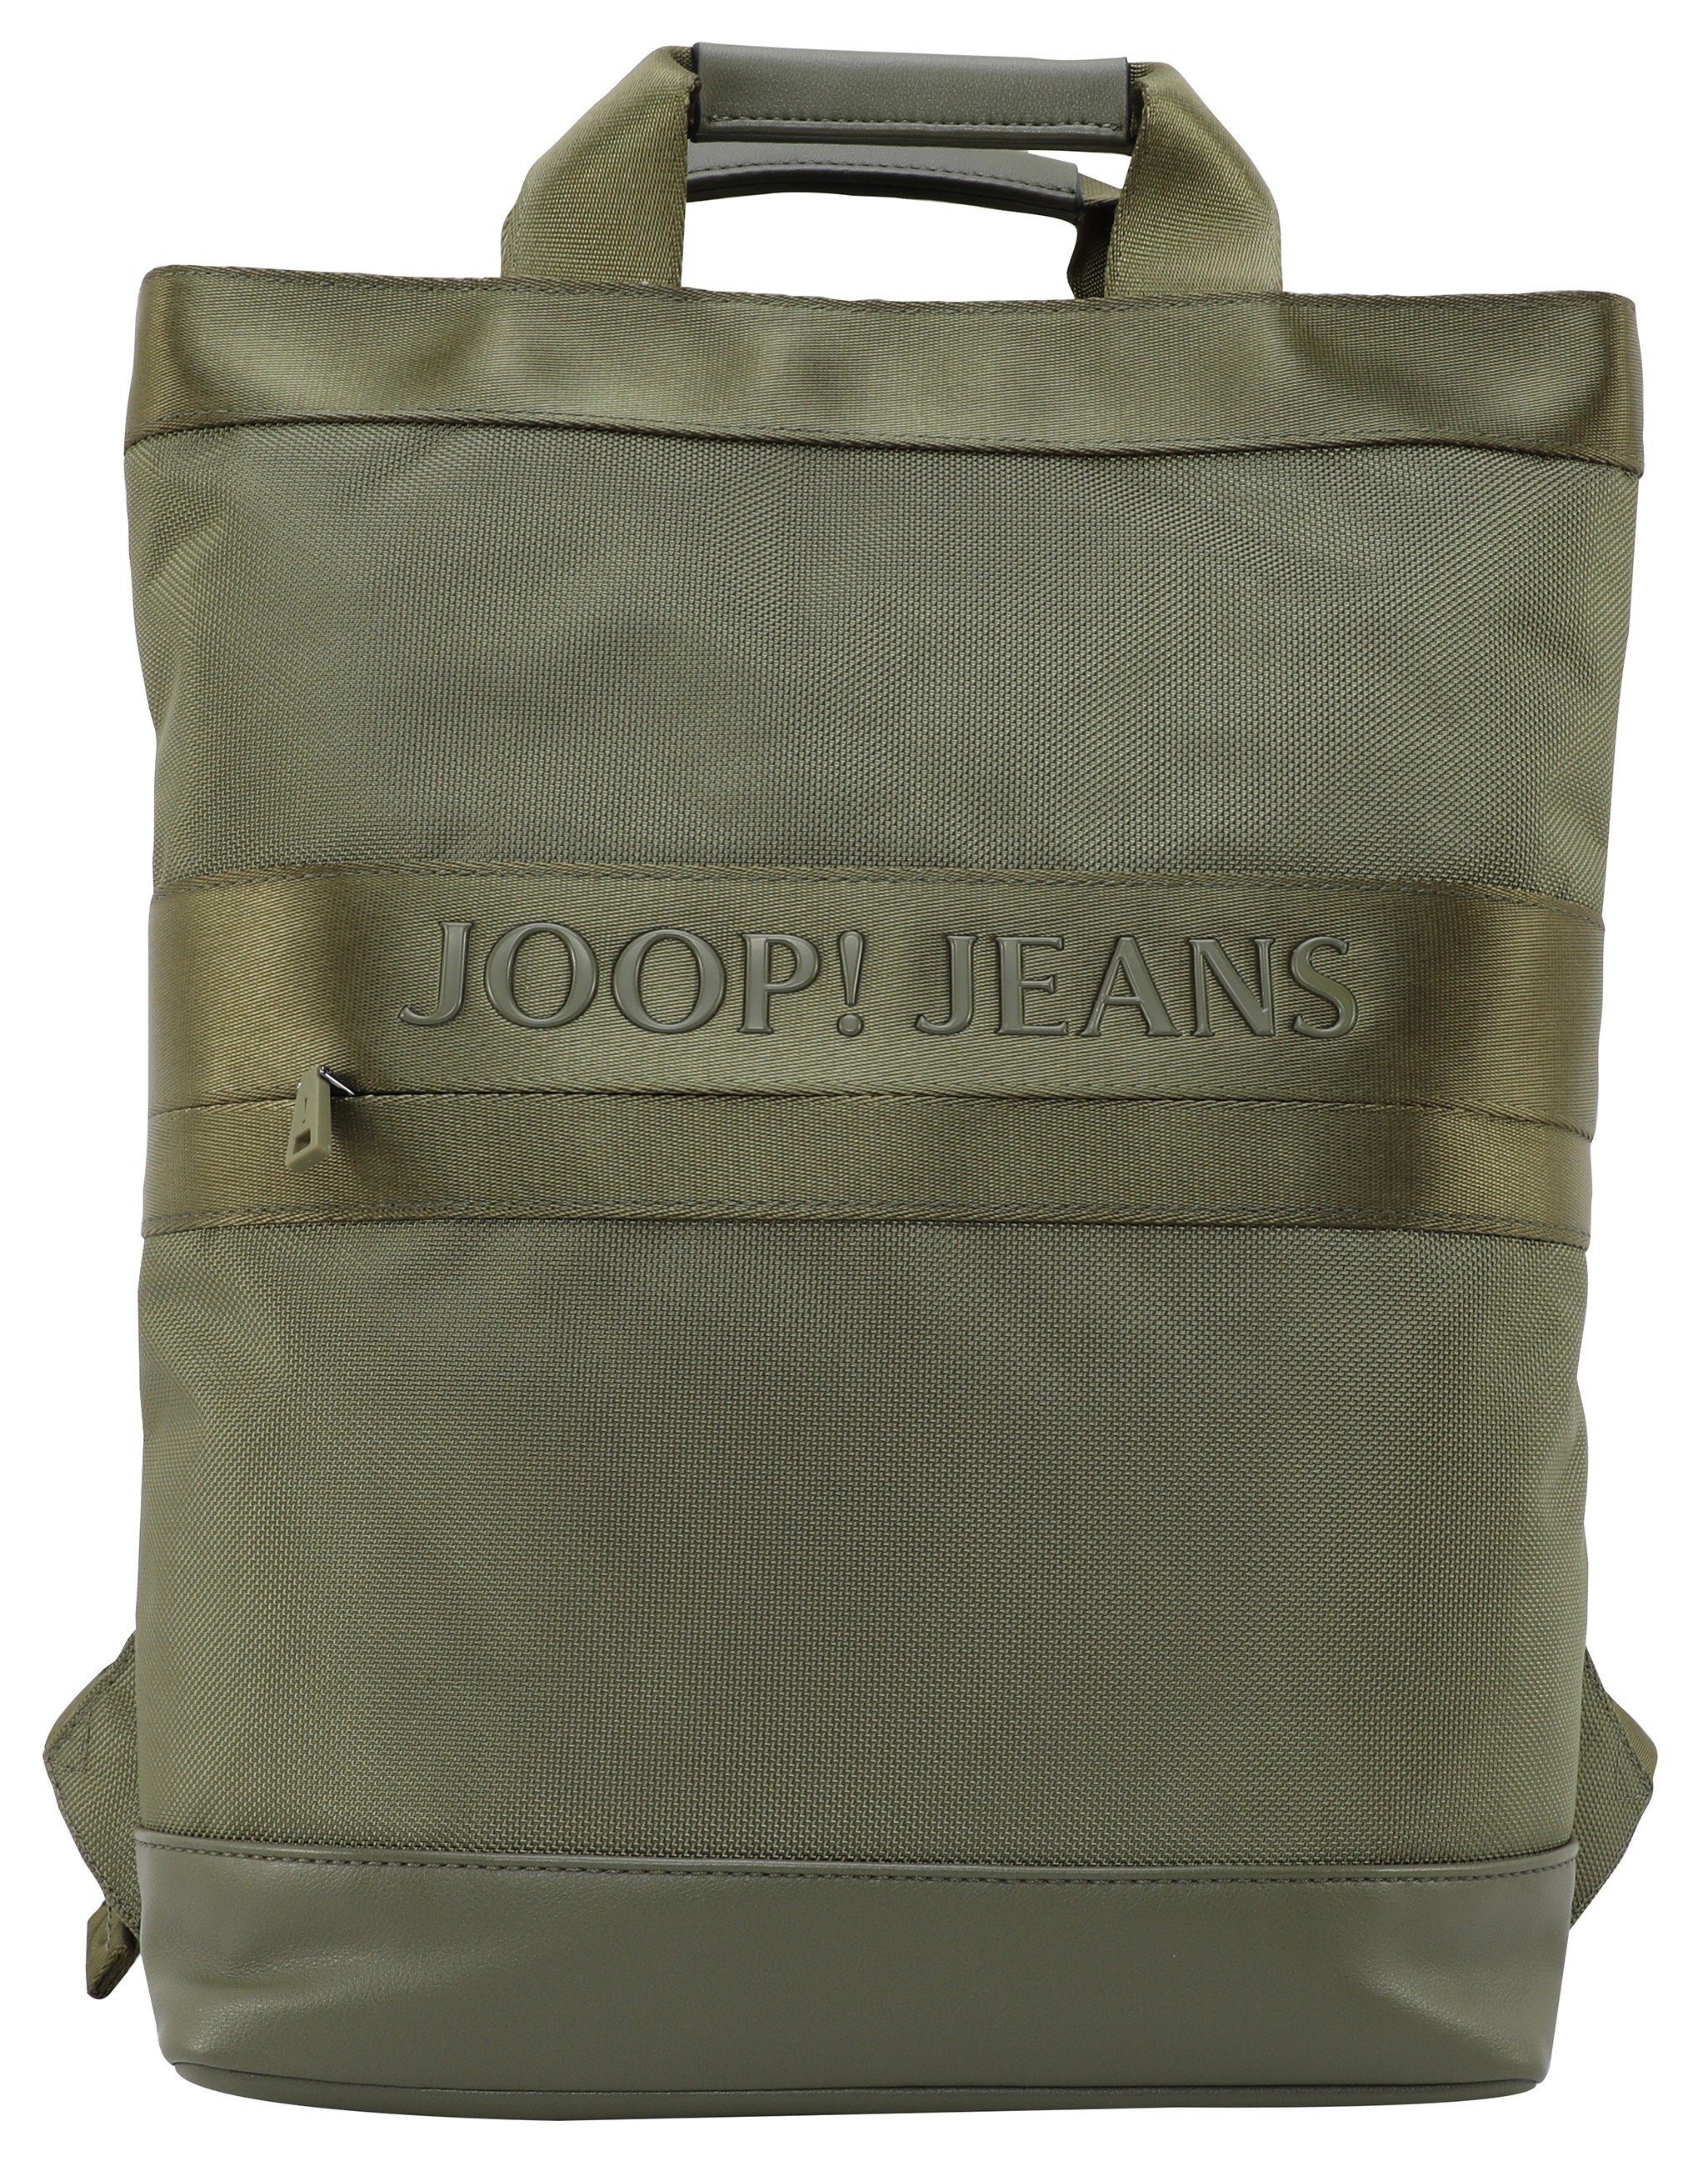 Joop Jeans Cityrucksack modica falk svz, night mit backpack Reißverschluss-Vortasche forest